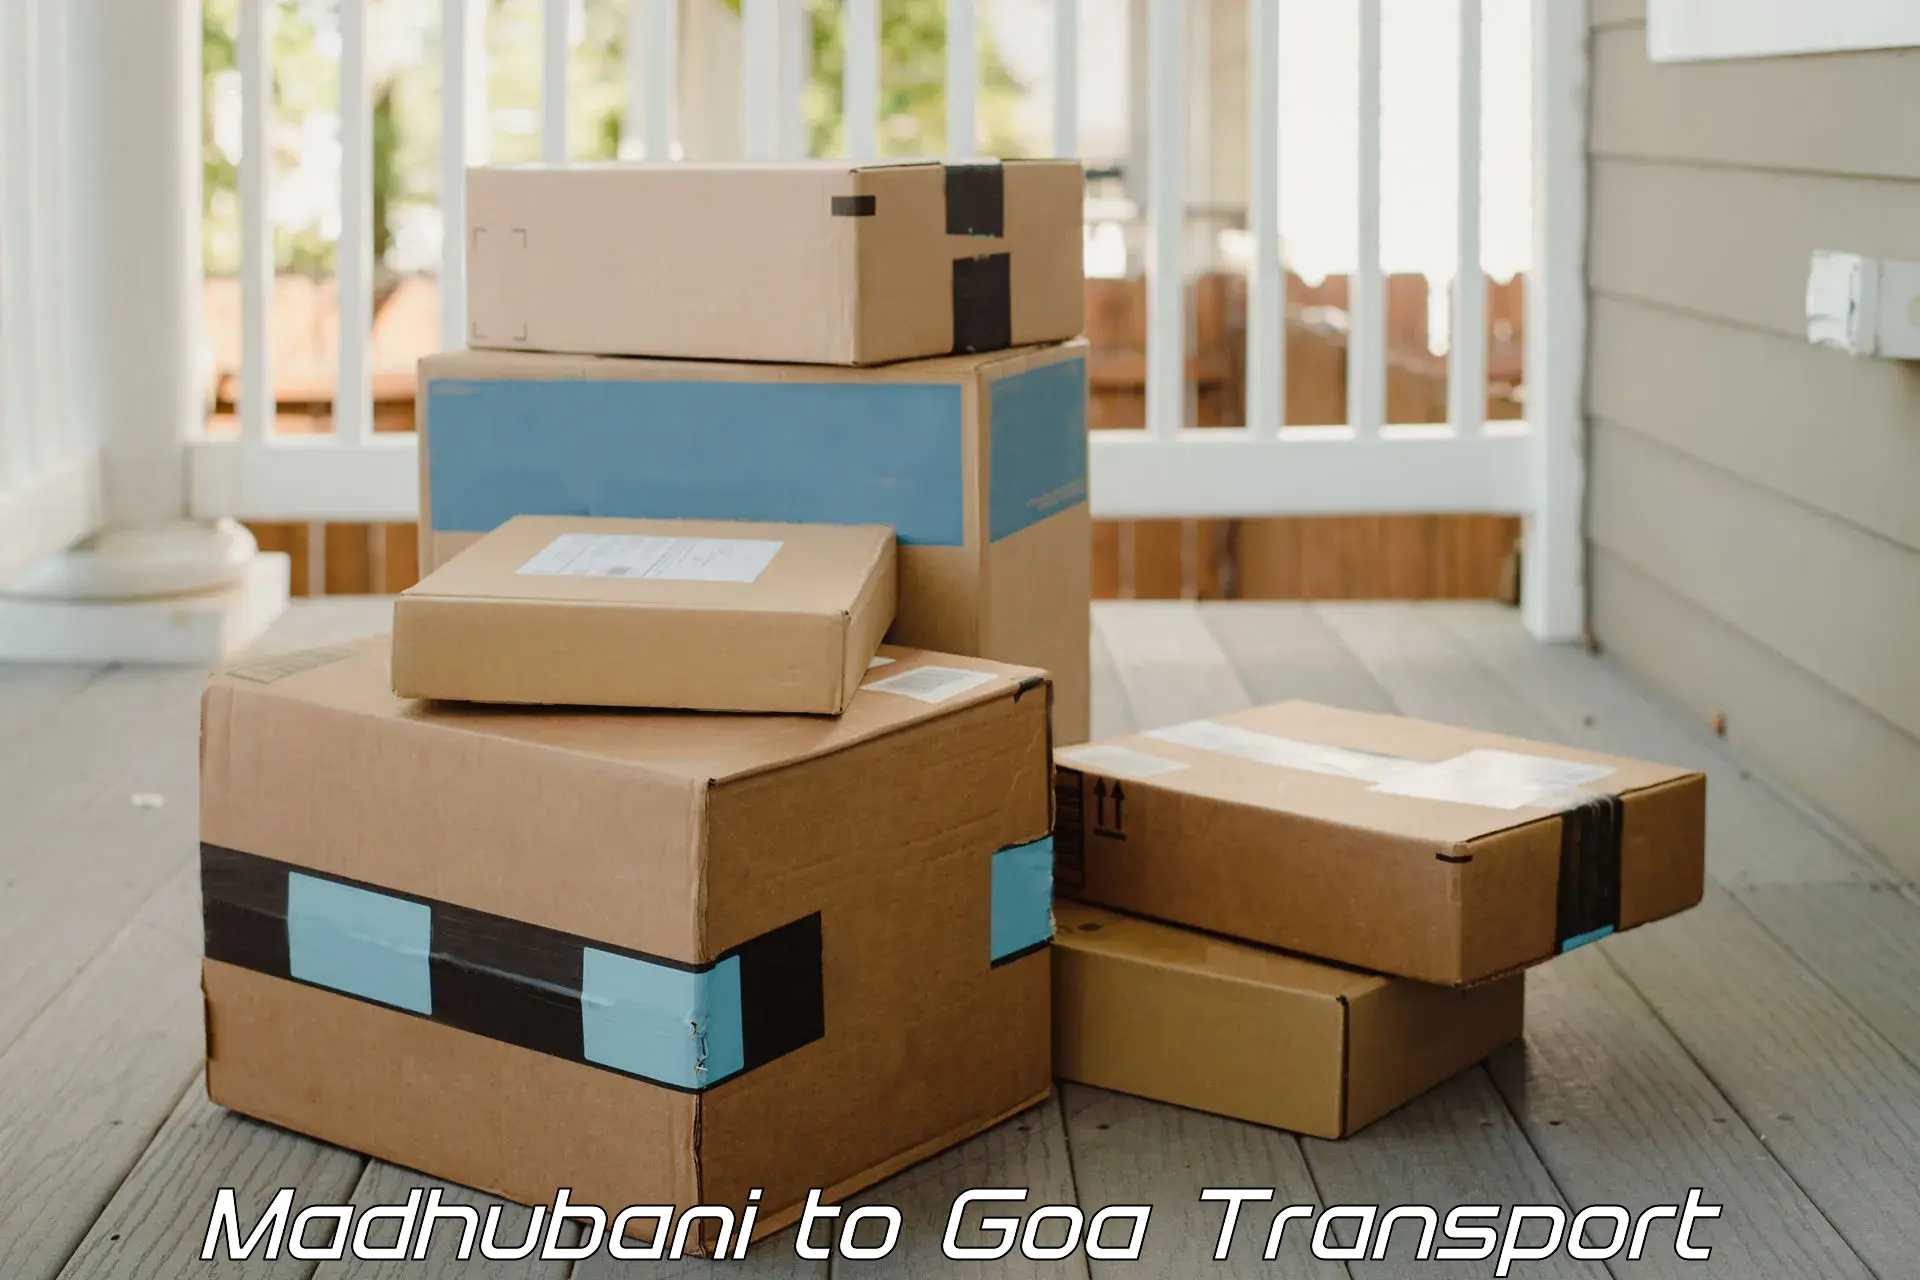 Transportation solution services Madhubani to Goa University